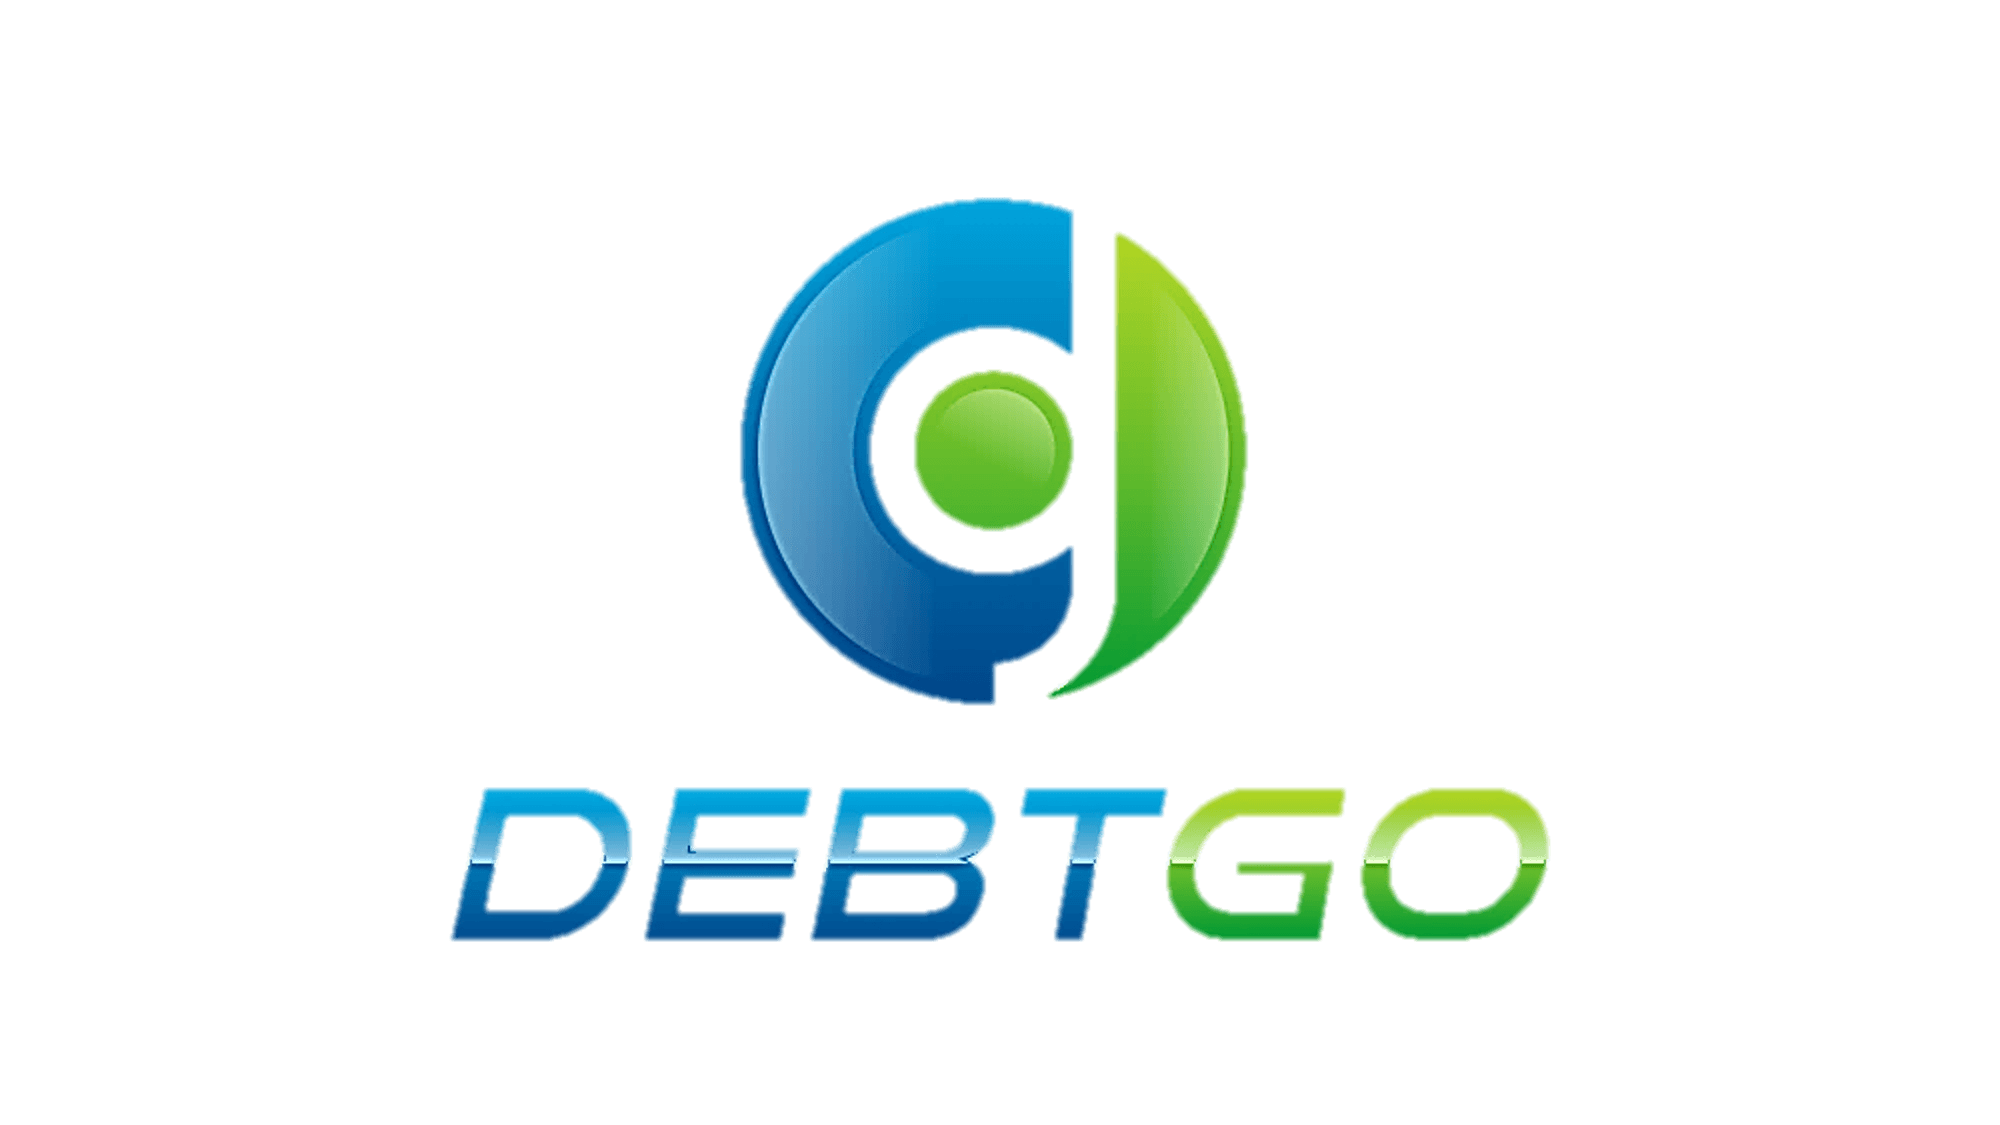 The logo of DebtGo